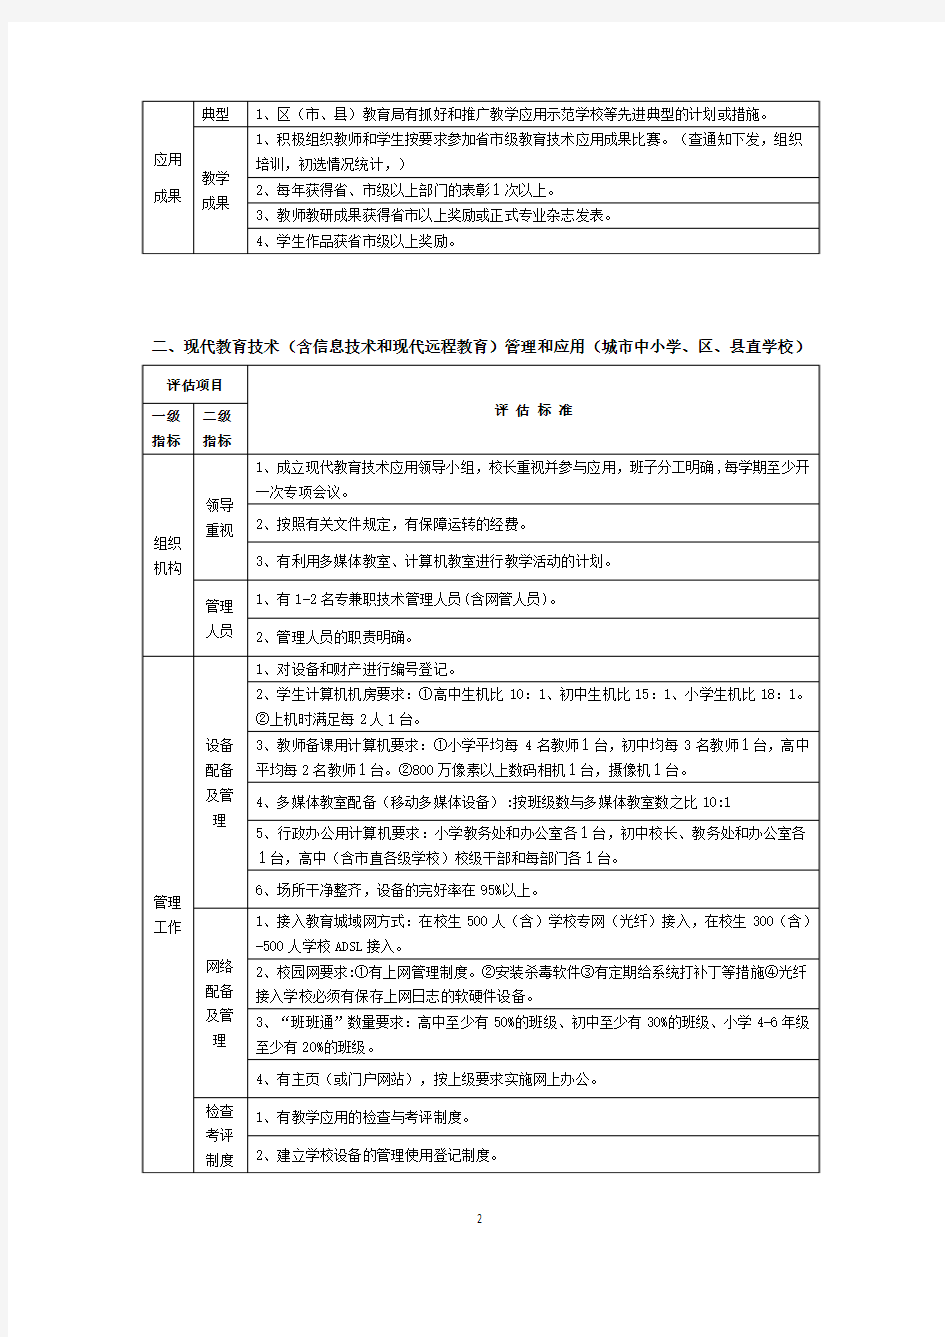 贵阳市中小学教育信息化工作评估标准(试行)